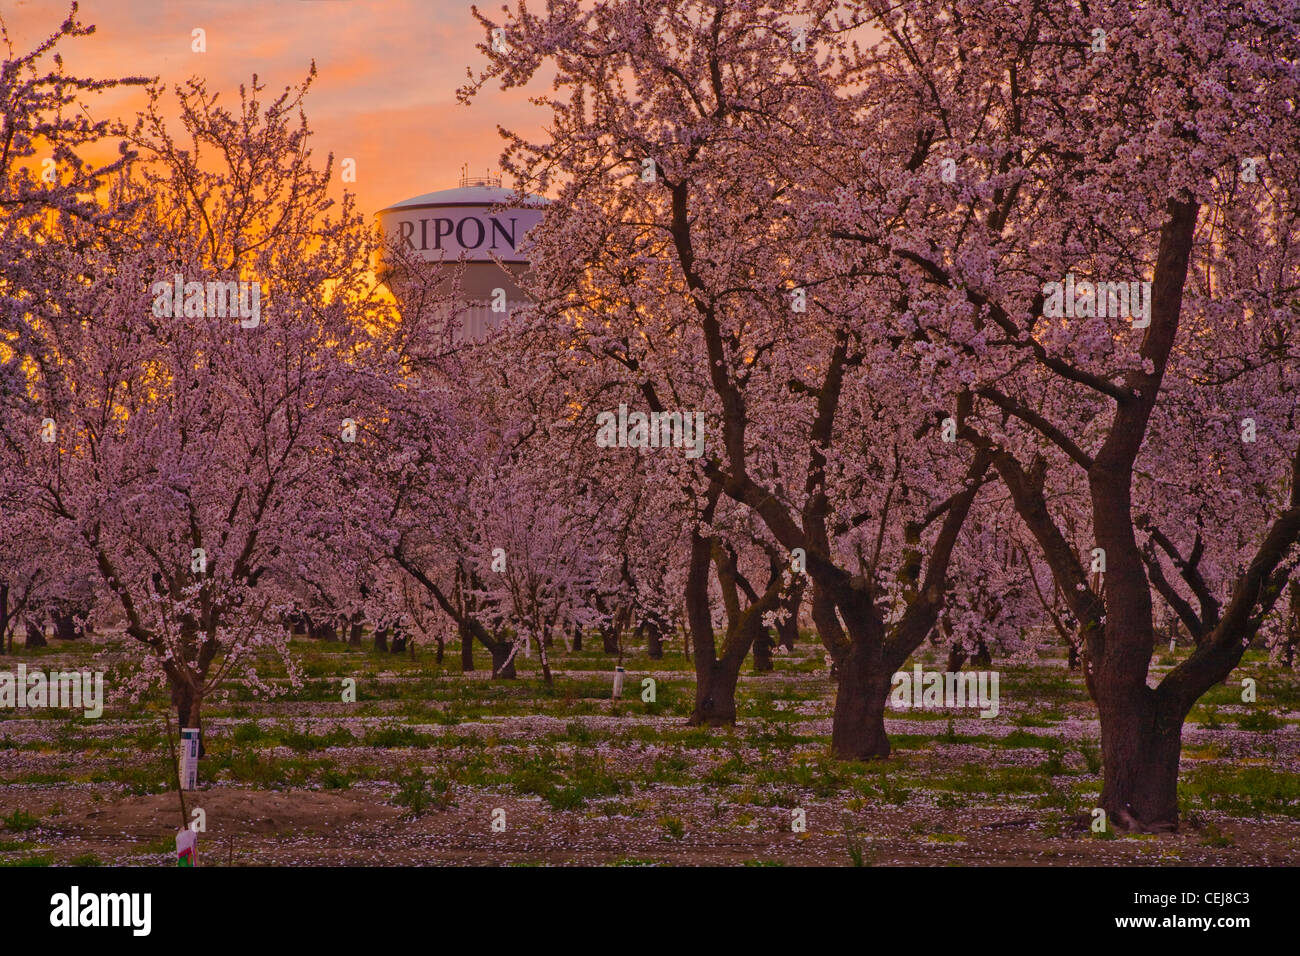 Agriculture - Peach orchard en pleine floraison printanière au lever du soleil avec un tour de l'eau dans l'arrière-plan / Ripon, Californie, USA. Banque D'Images